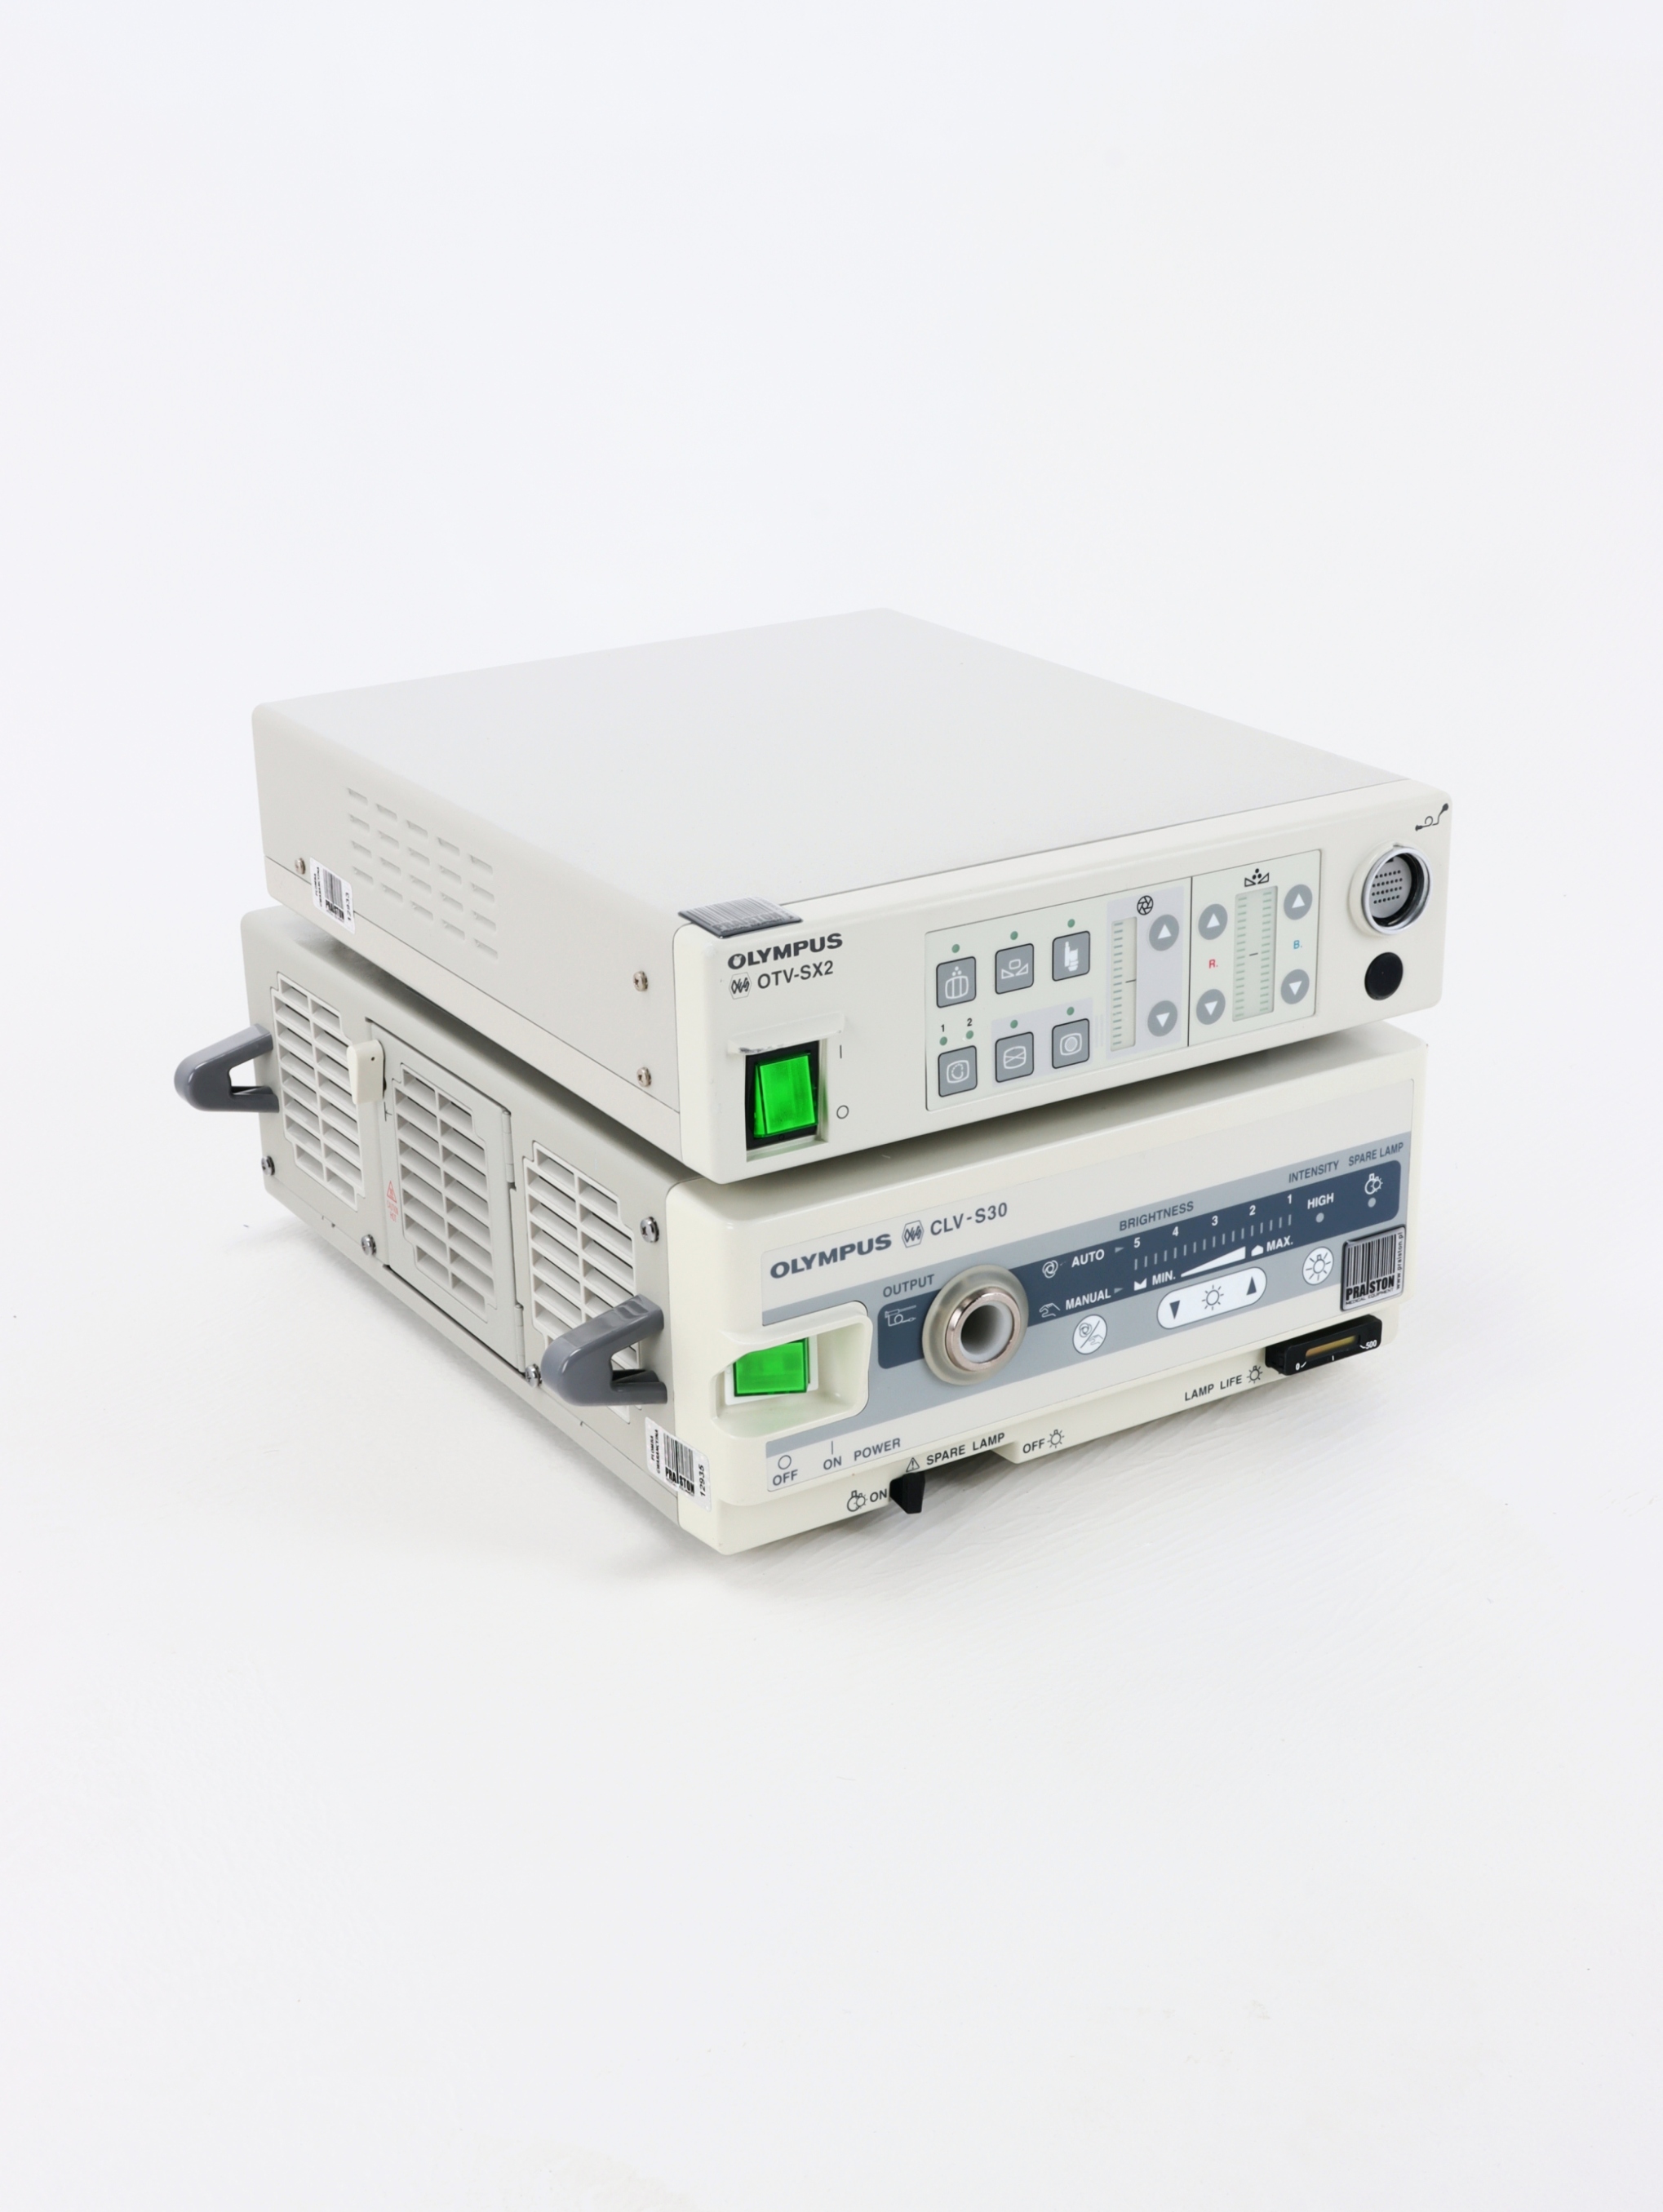 Procesory i źródła światła używane B/D Olympus OTV-SX2 / CLV-S30 - Praiston rekondycjonowany